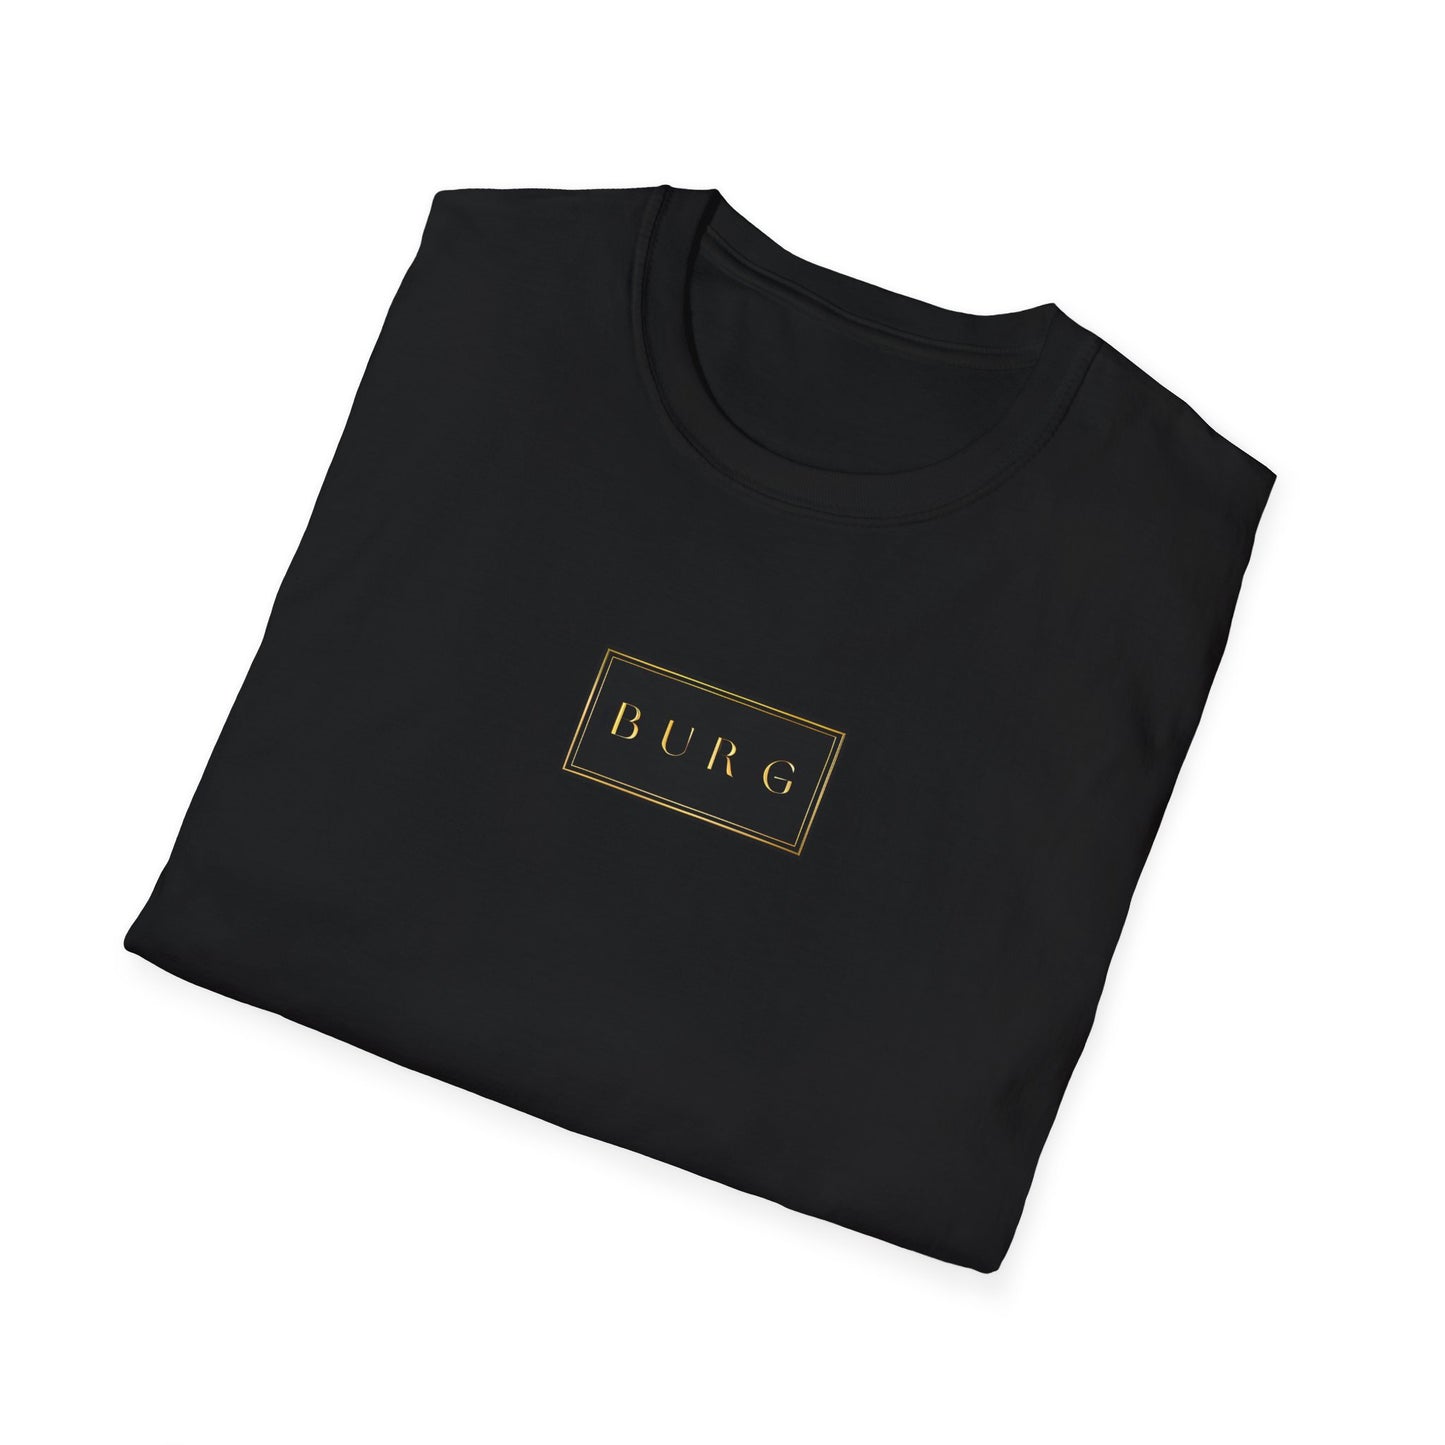 BURG Unisex Softstyle T-Shirt